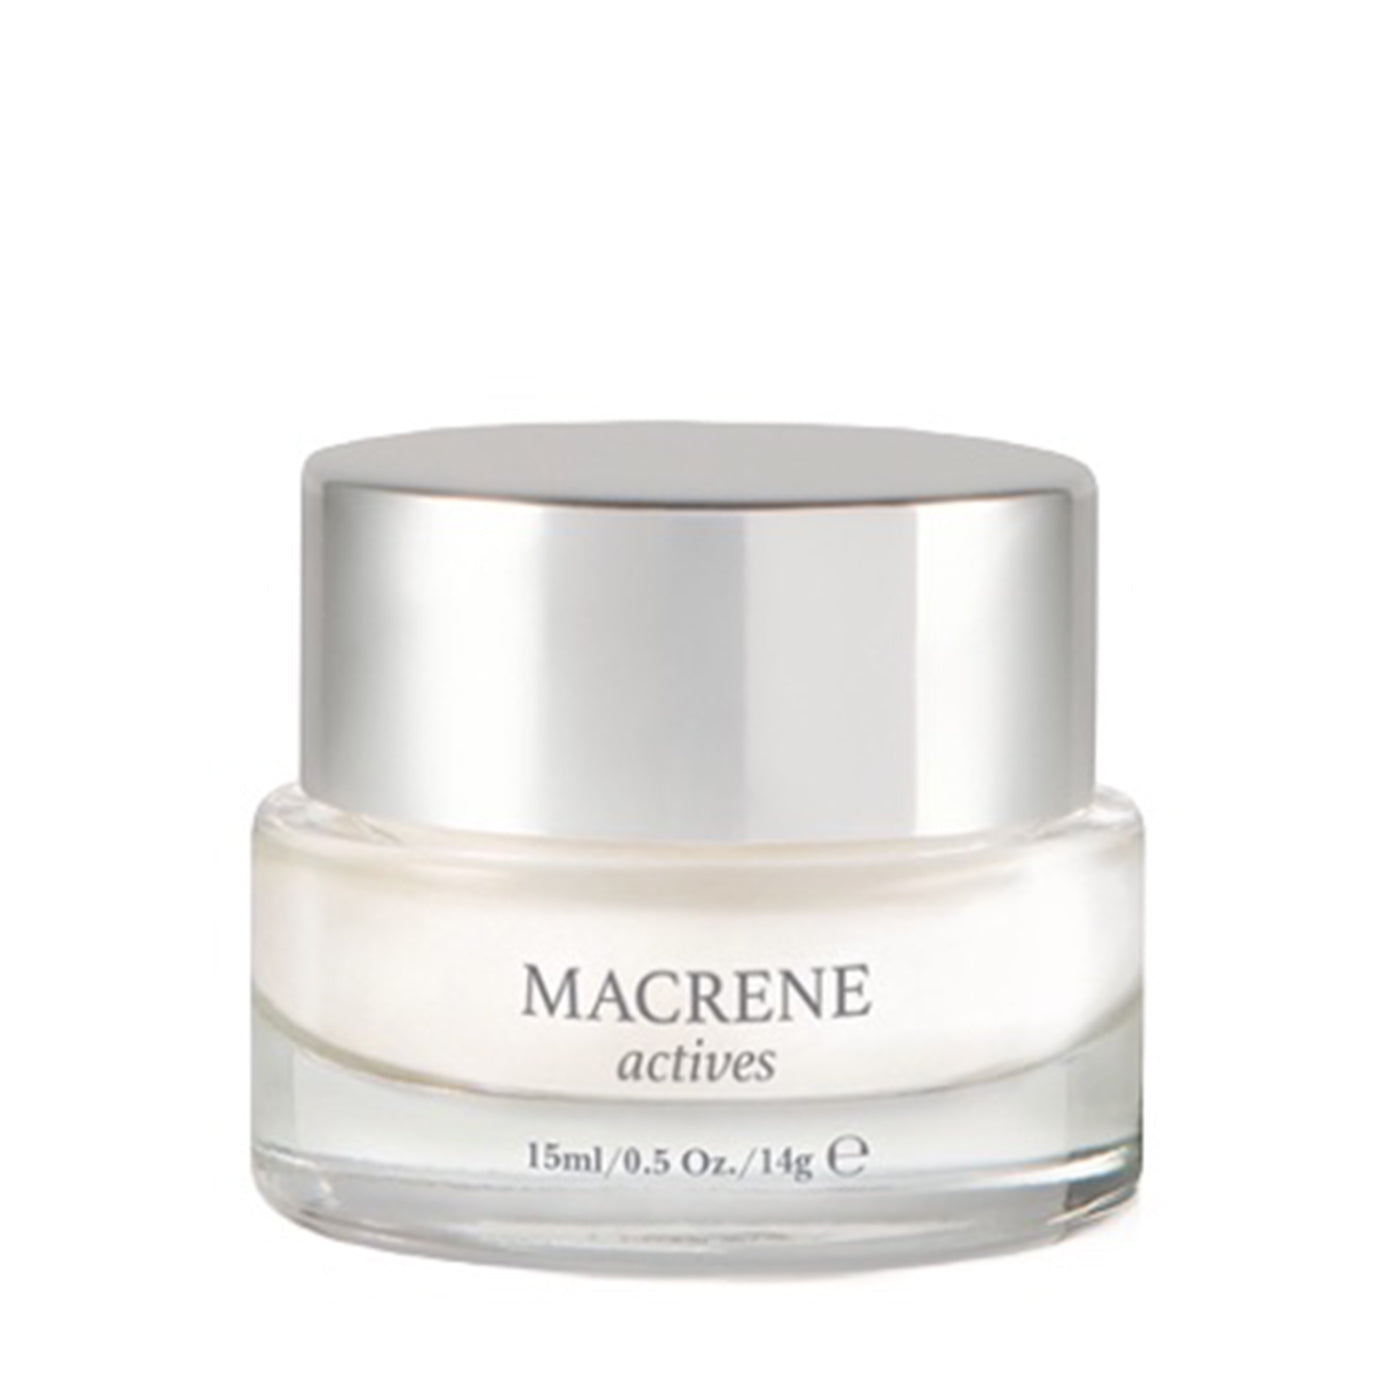 Macrene Actives High Performance Eye Cream | Ayla